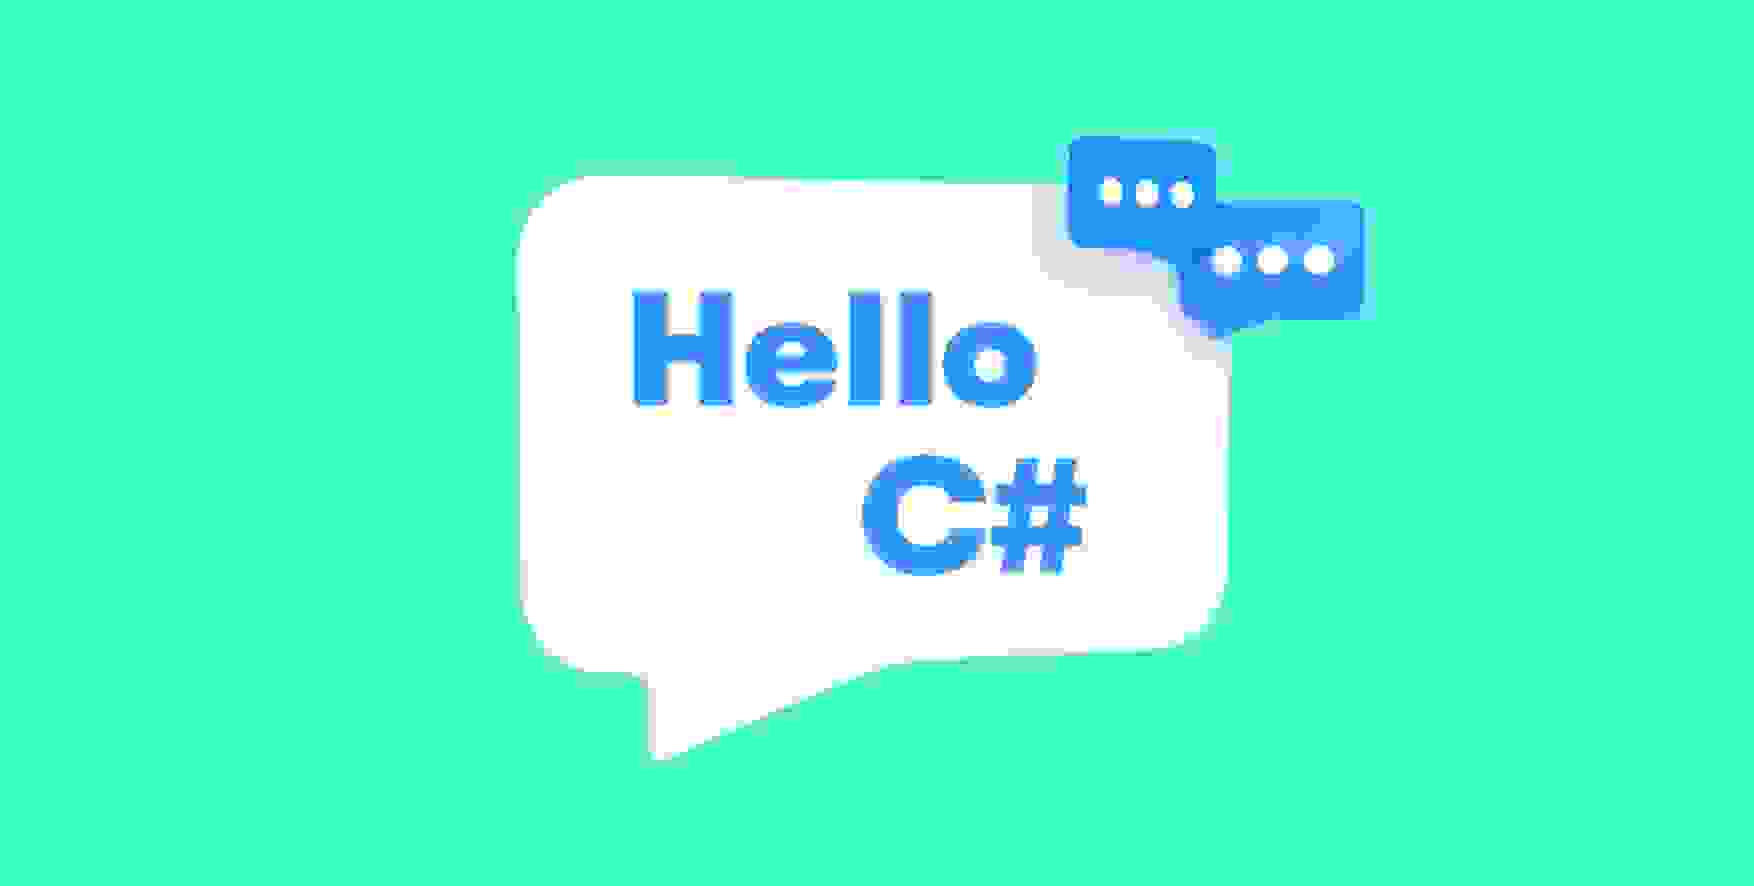 Hello C# in a speech bubble